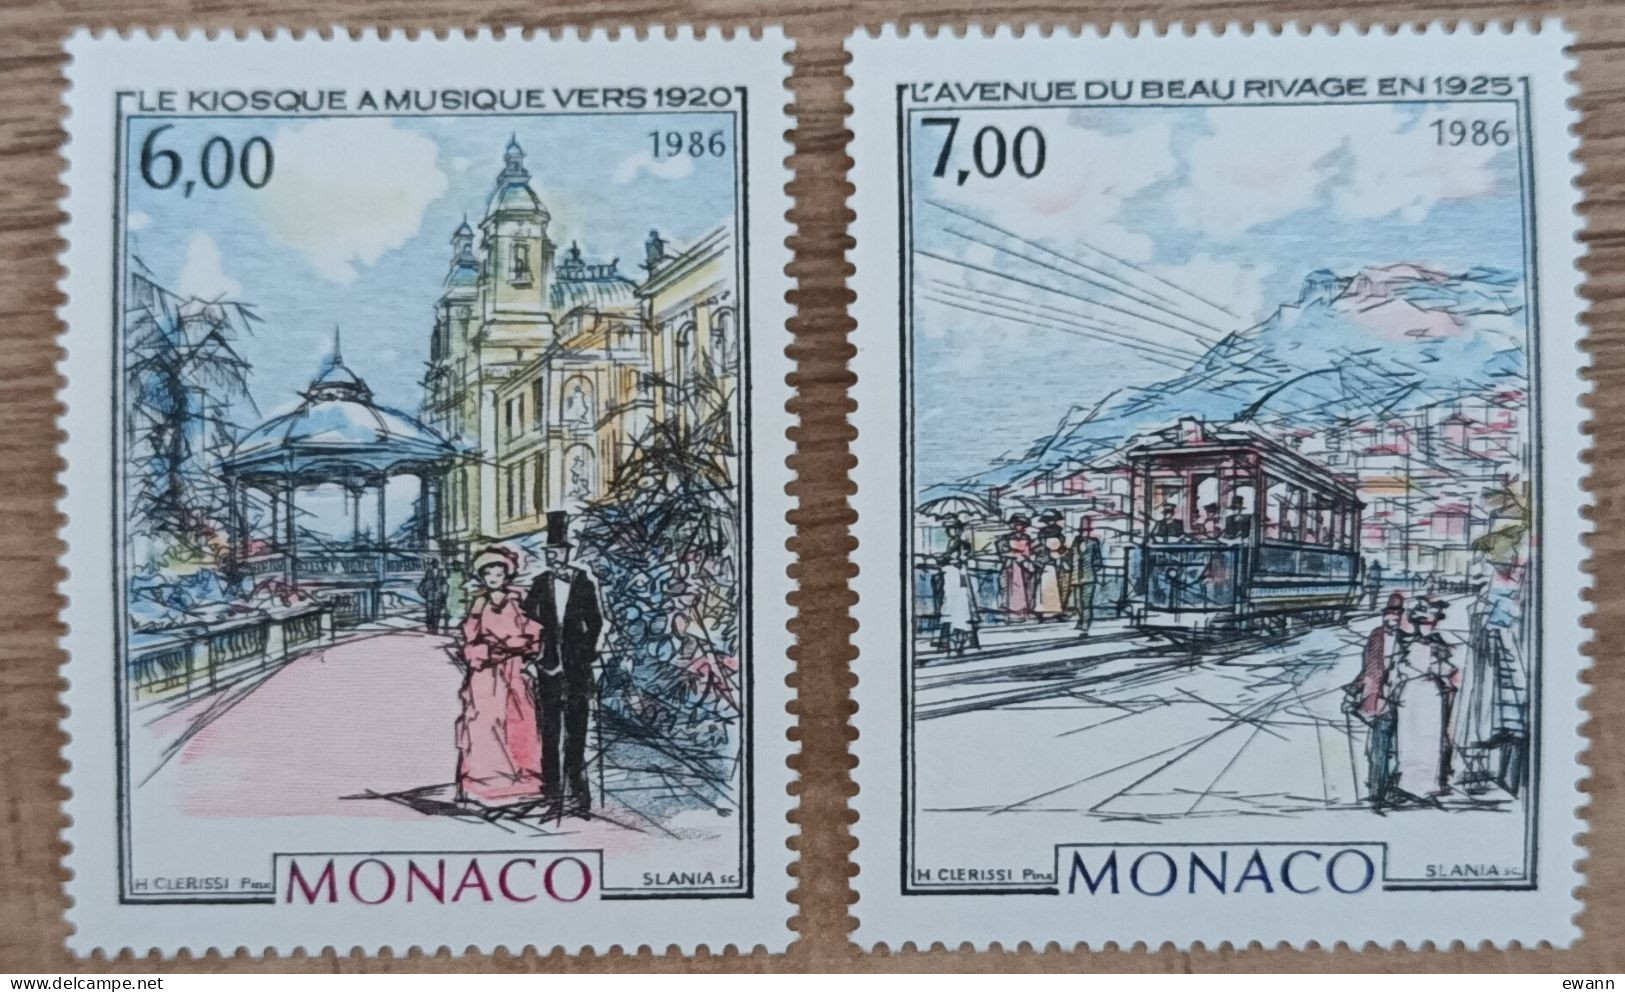 Monaco - YT N°1543, 1544 - Monaco à La Belle Epoque / Kiosque à Musique / Avenue Du Beau Rivage - 1986 - Neuf - Unused Stamps